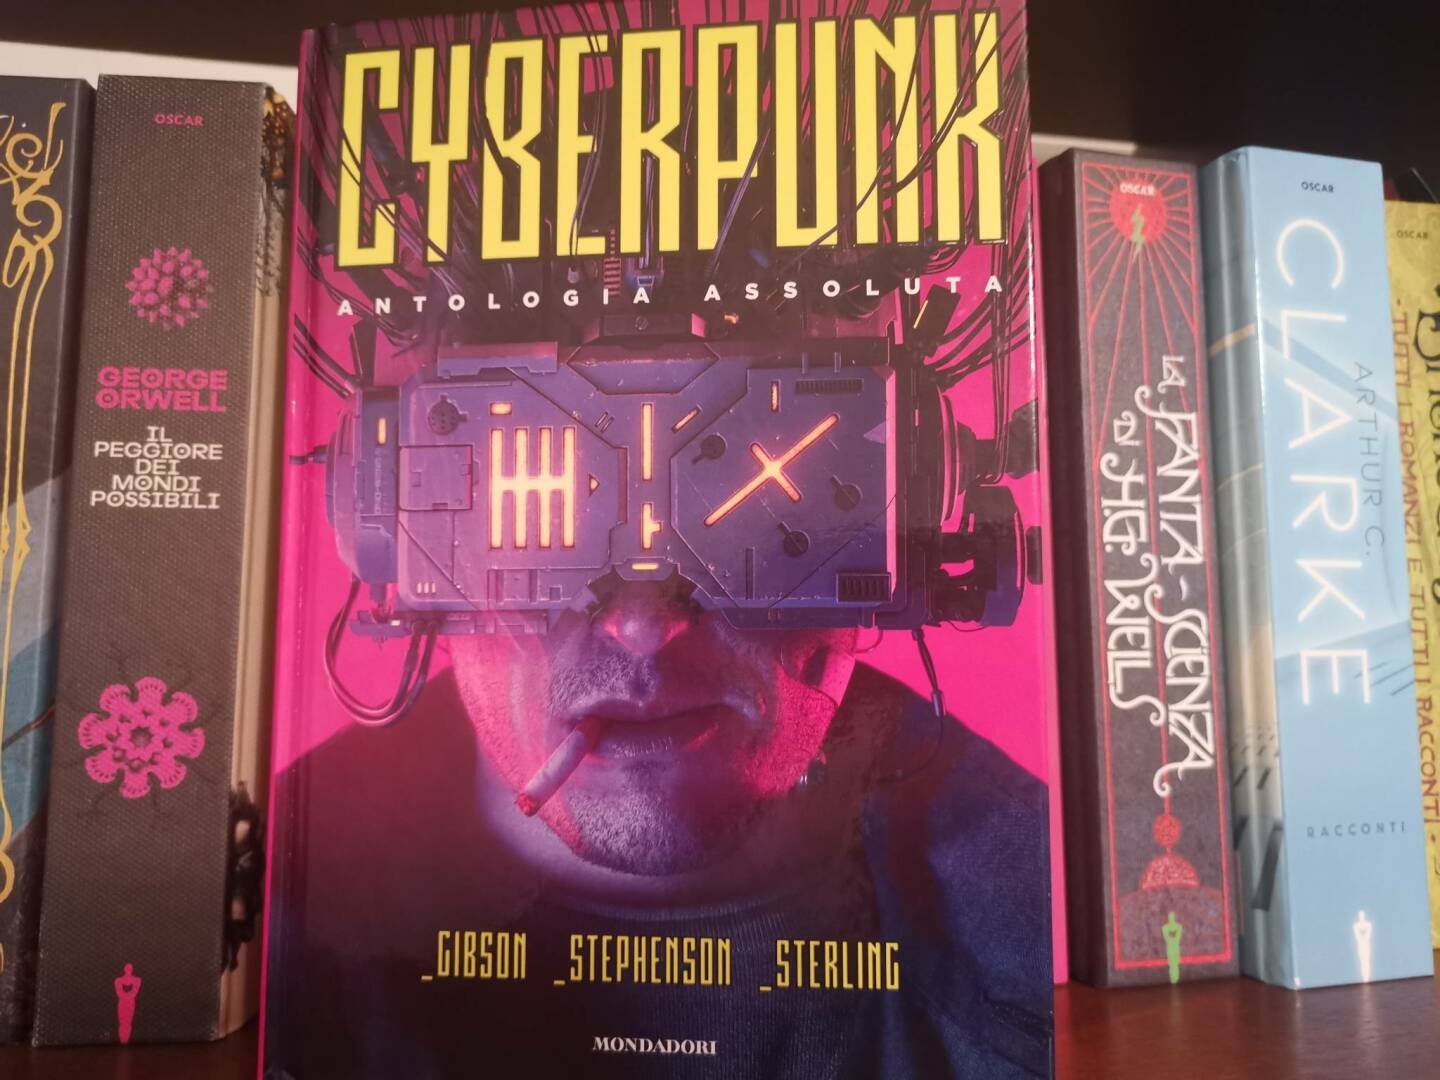 Immagine di Cyberpunk: Antologia Assoluta, recensione